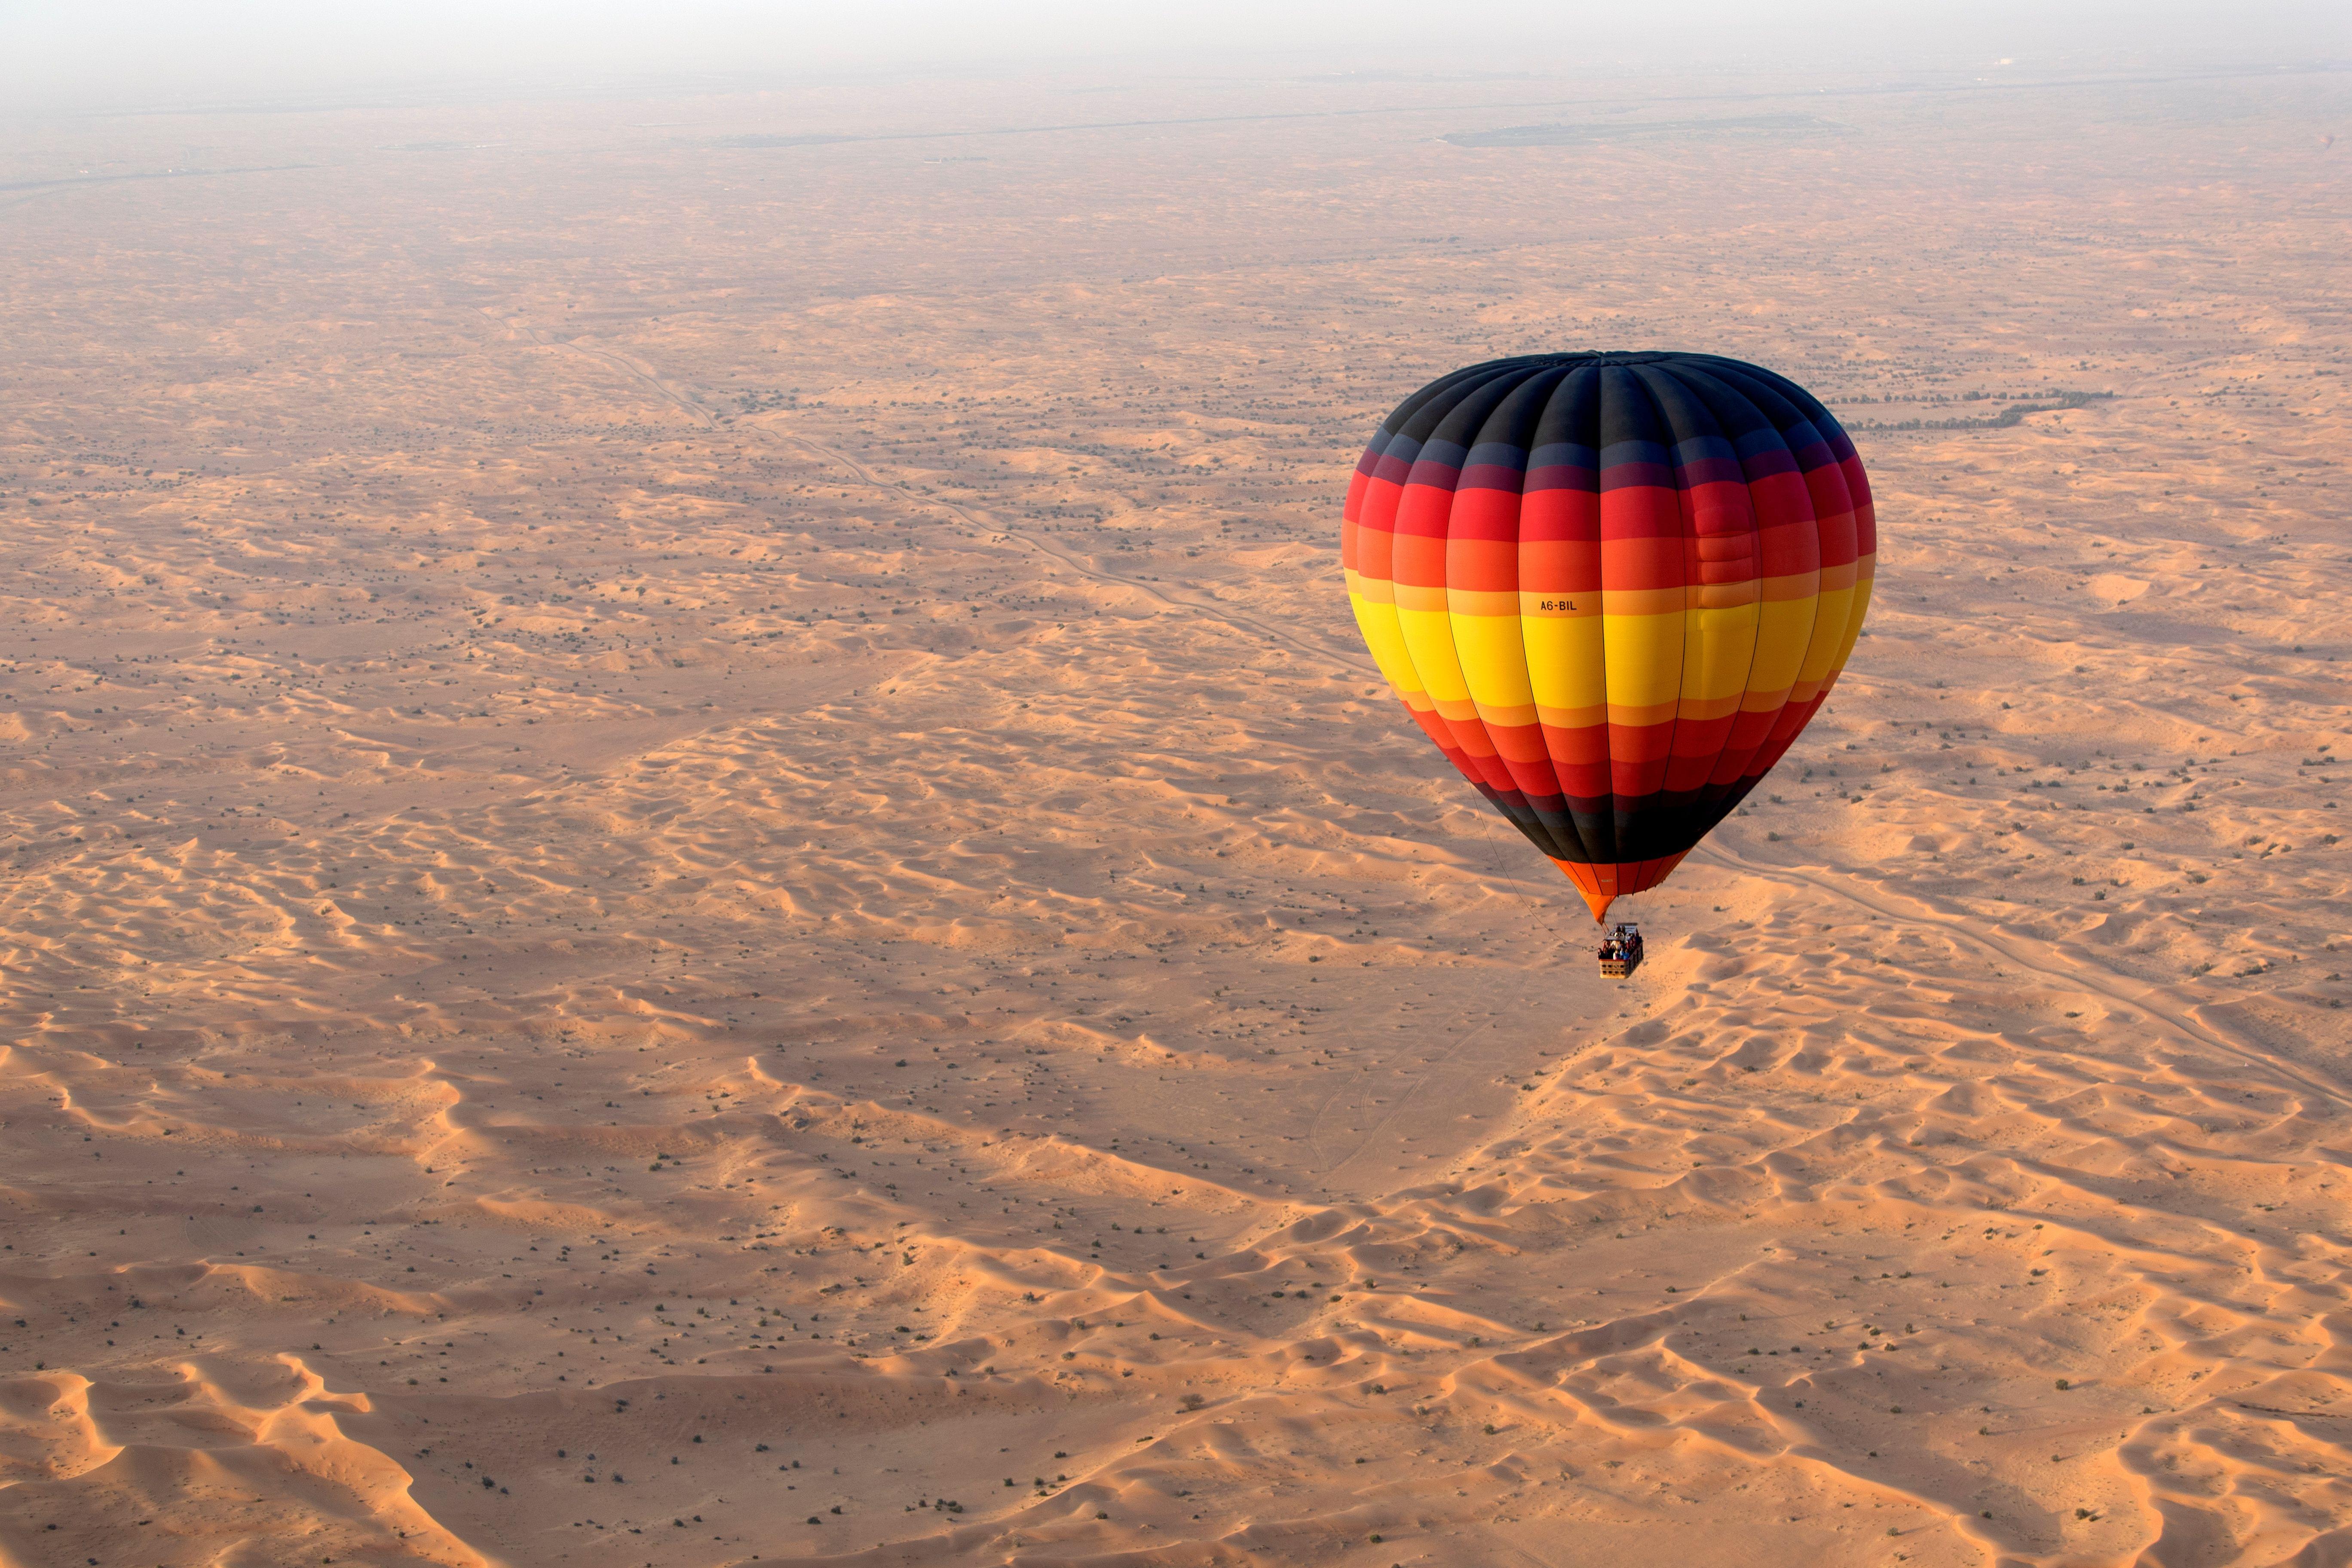 Flying Over Dubai via Jetpack Looks Like a Definitive Hoot